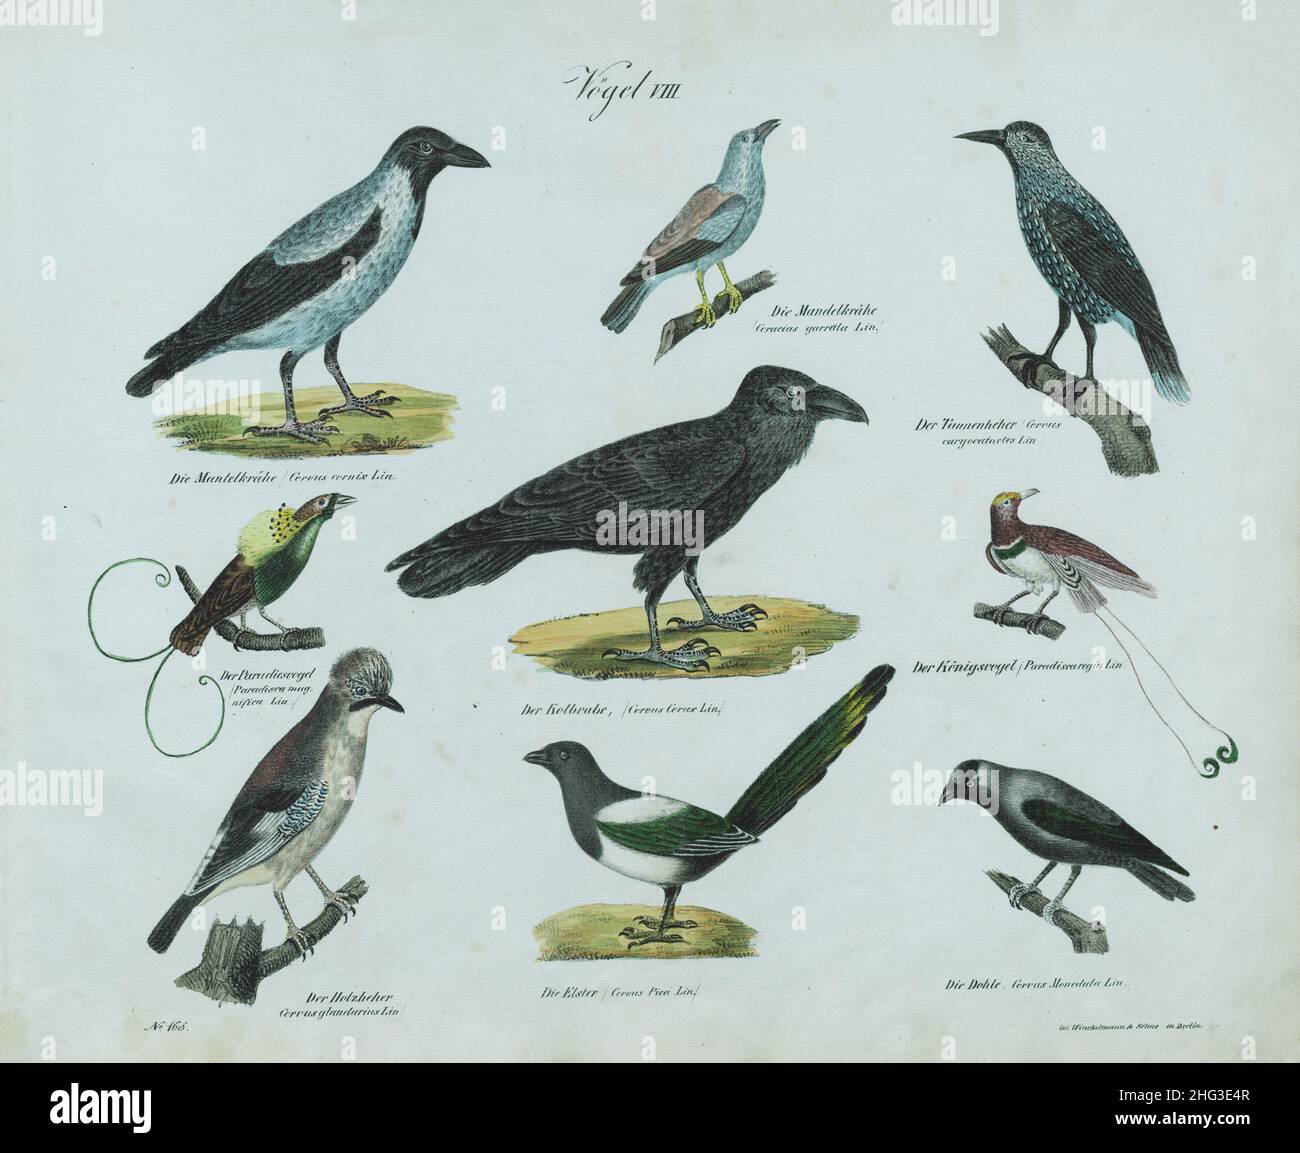 Litografía vintage de aves (parte VIII) por sistema de Carl Linnaeus. 1836 litografía alemana de aves; ilustracion vintage de aves; enfermedad del siglo 19th Foto de stock